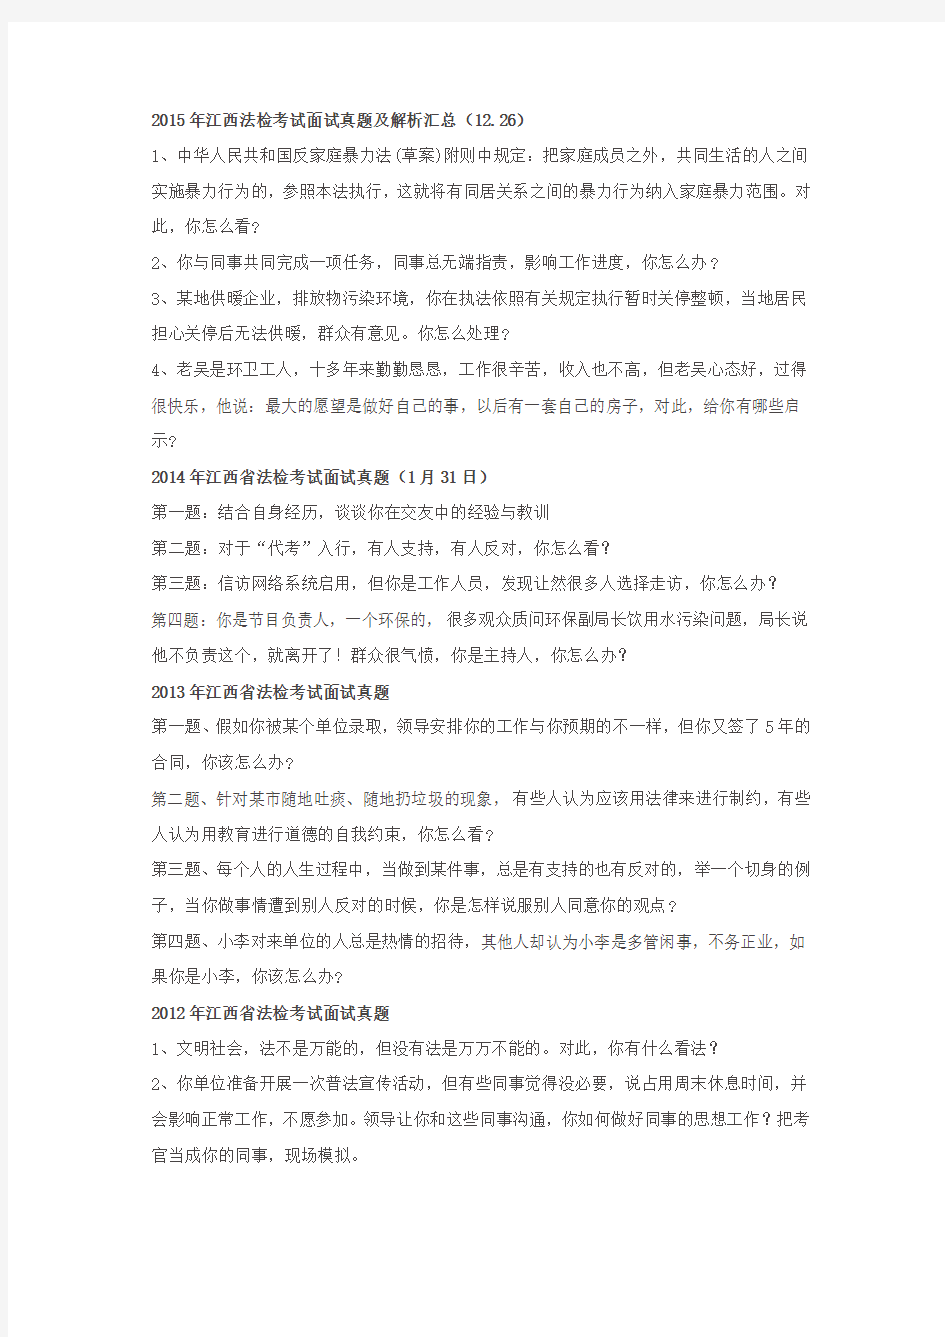 (完整版)江西省法检考试历年面试真题汇总